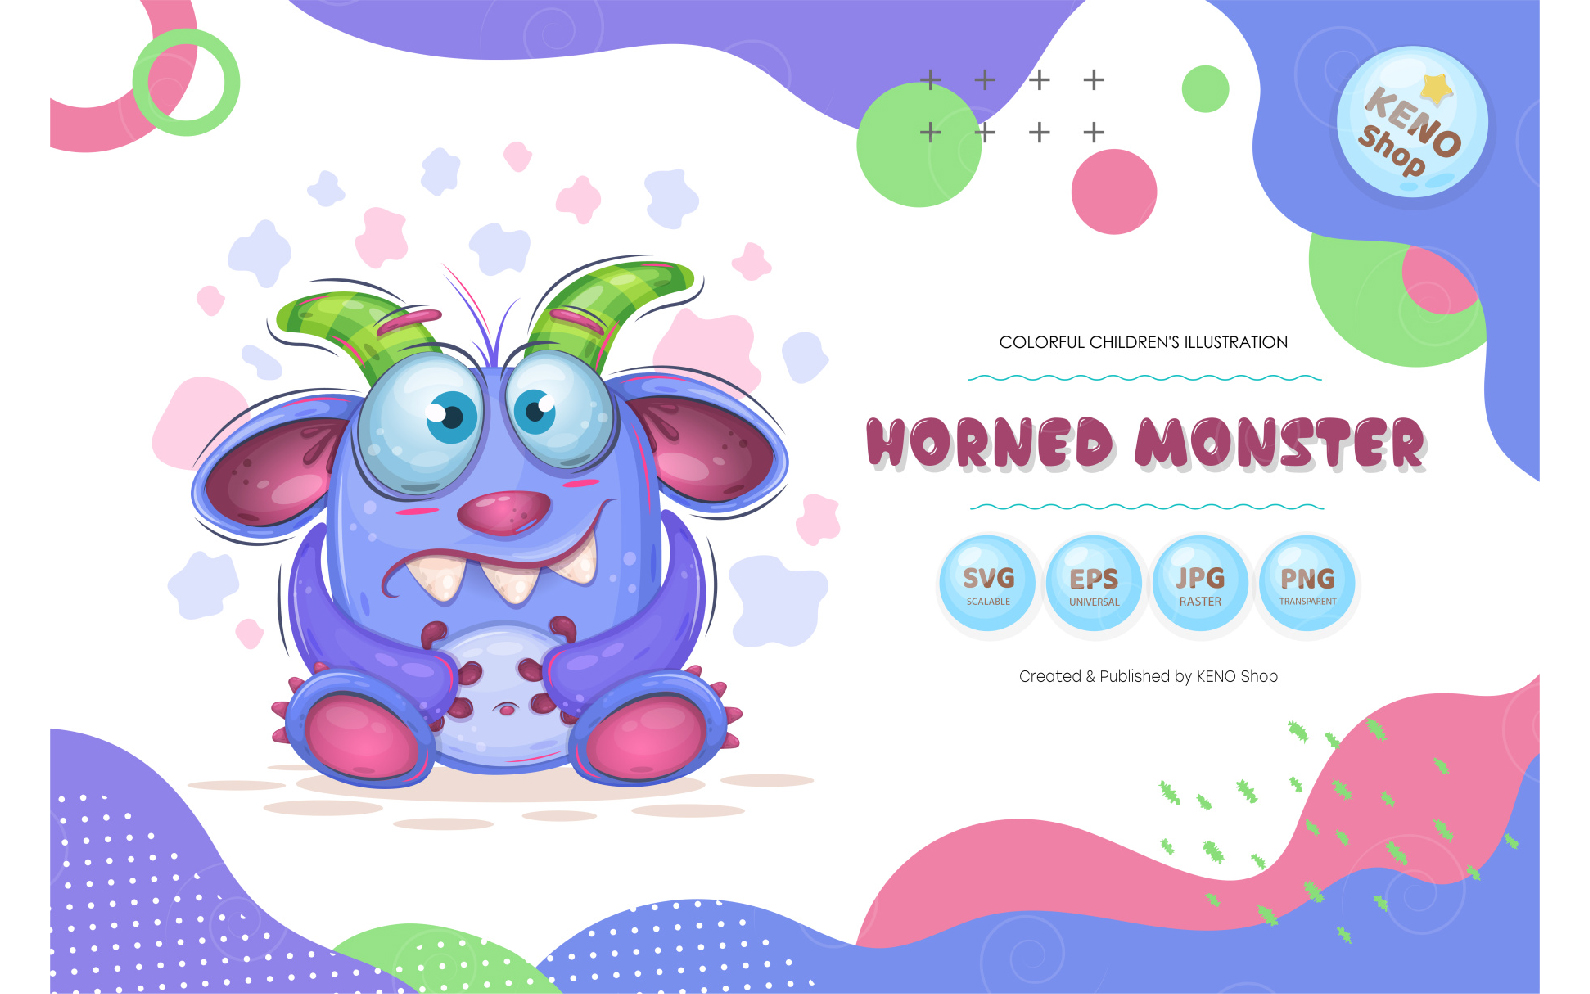 Cute Horned Monster - Vector Image